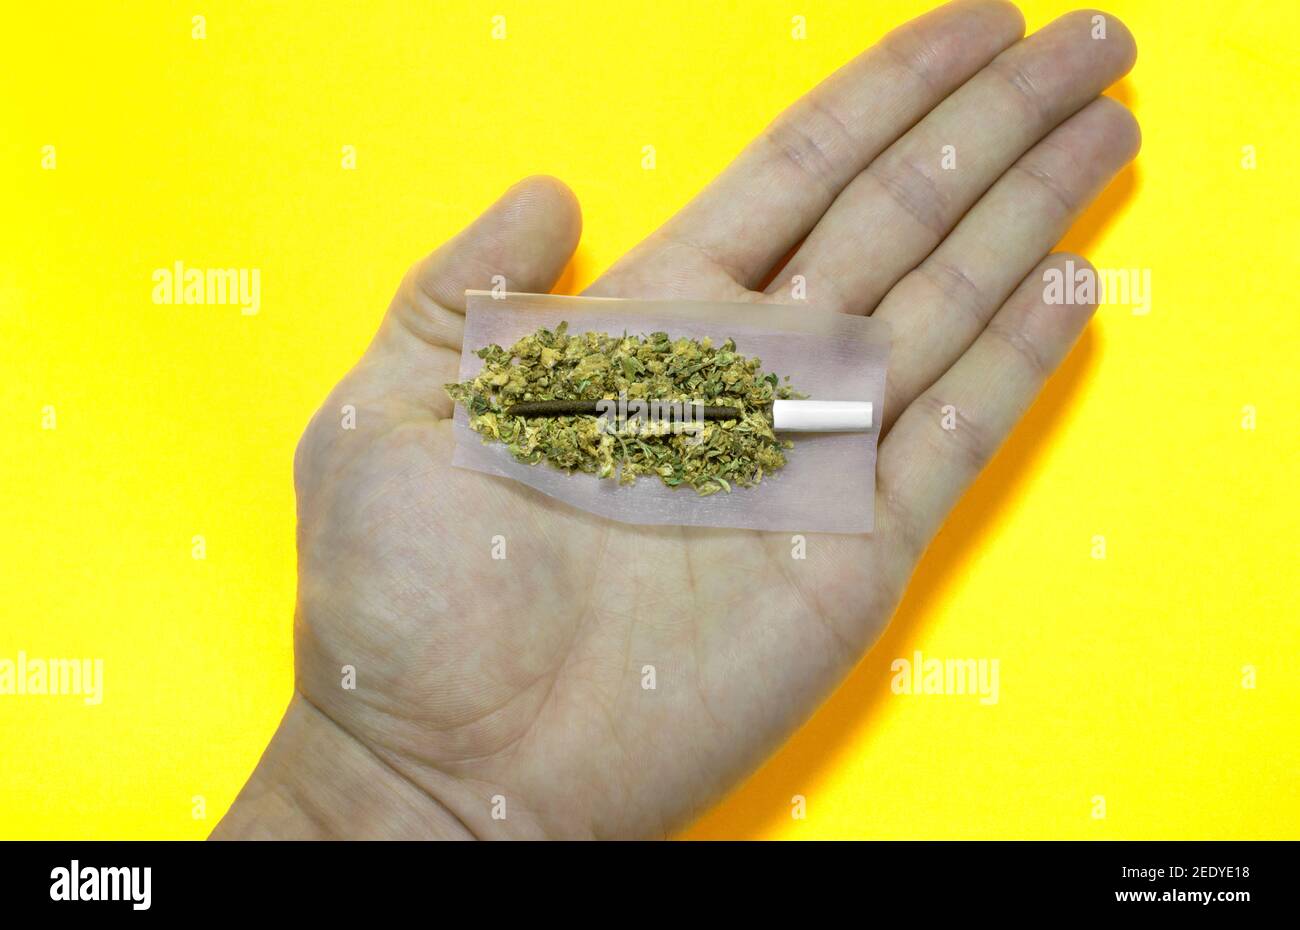 Hand hält hochwertige Joint mit zwei Arten von Cannabiszubereitungen  gemacht: Haschisch und Unkrautknospen. Hand mit Gelenk bereit, auf gelb zu  Rollen Stockfotografie - Alamy